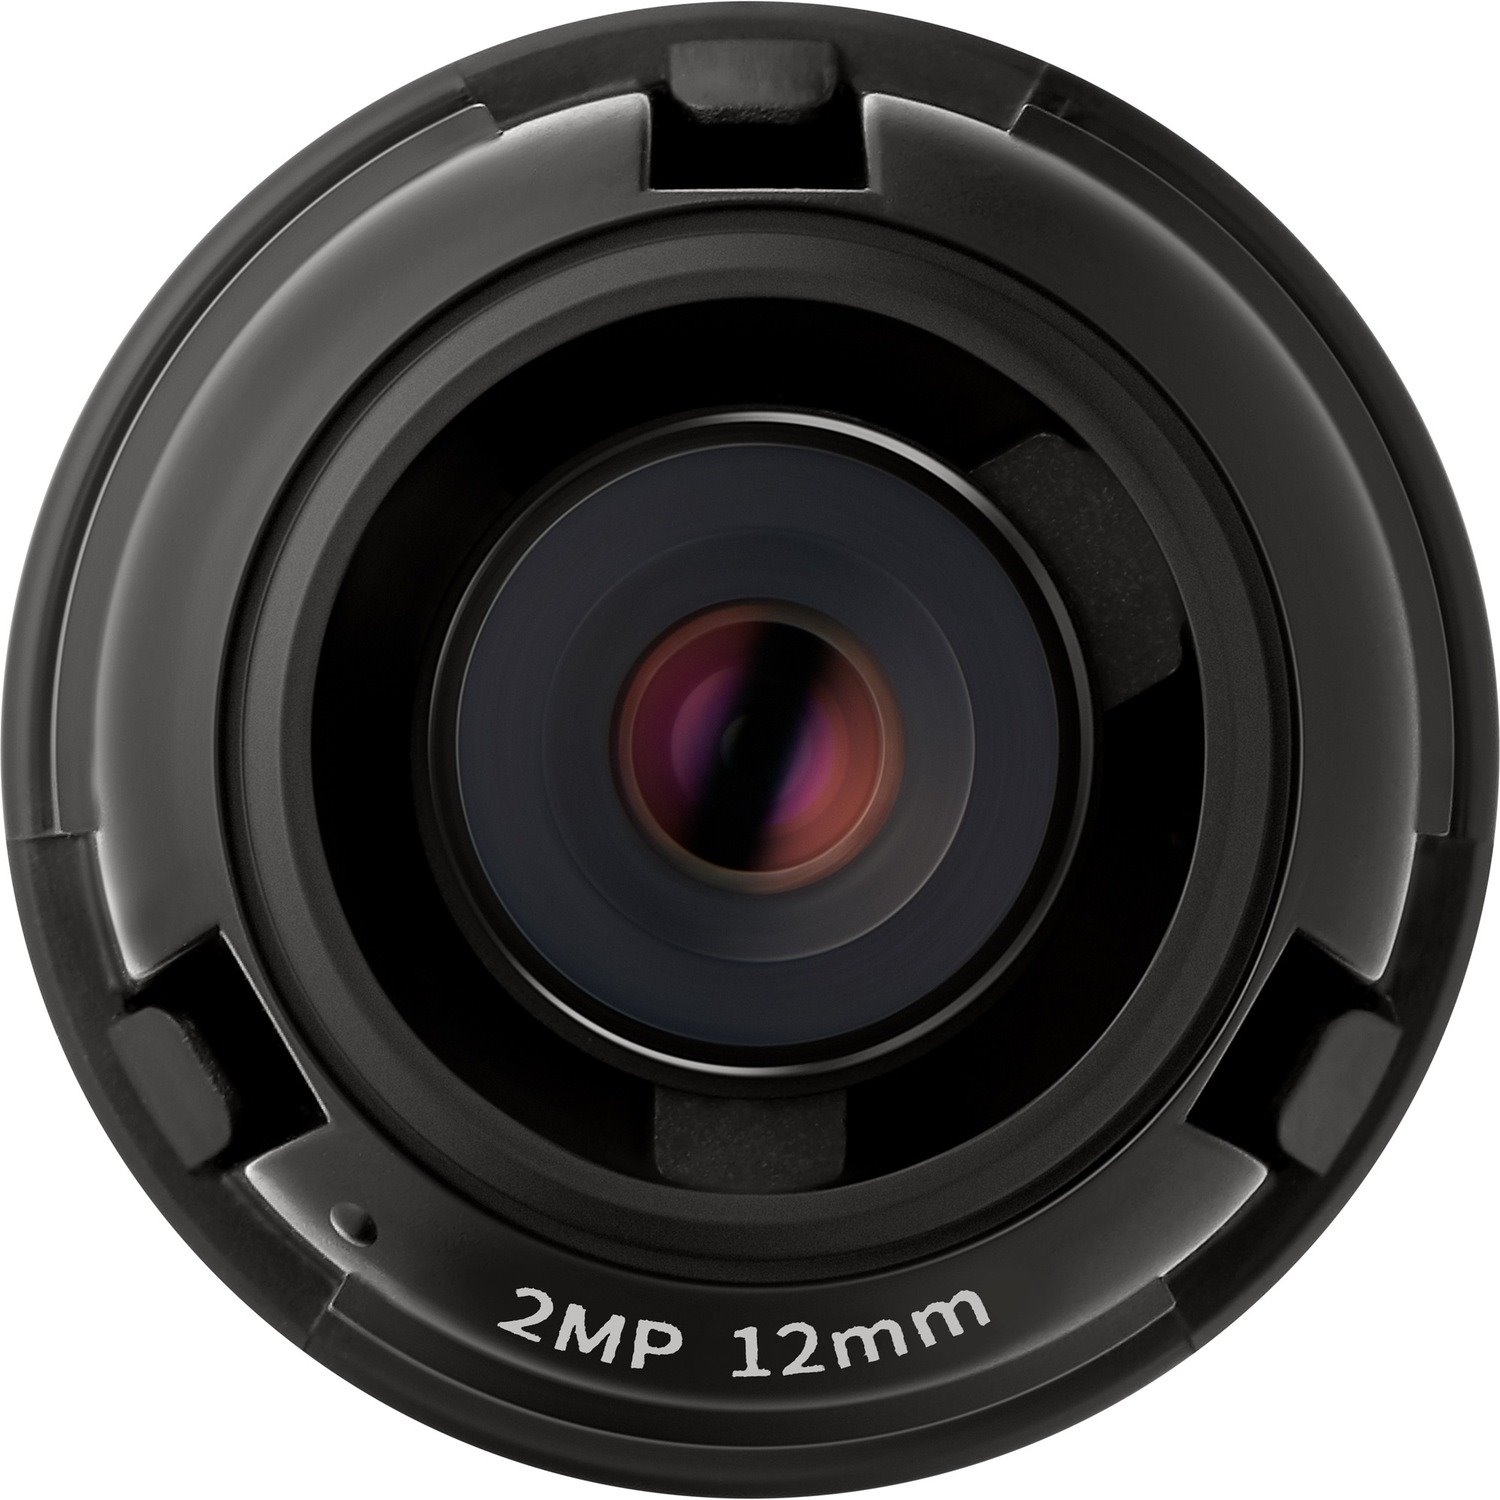 Wisenet SLA-2M1200P - 12 mmf/2 - Fixed Lens for M12-mount